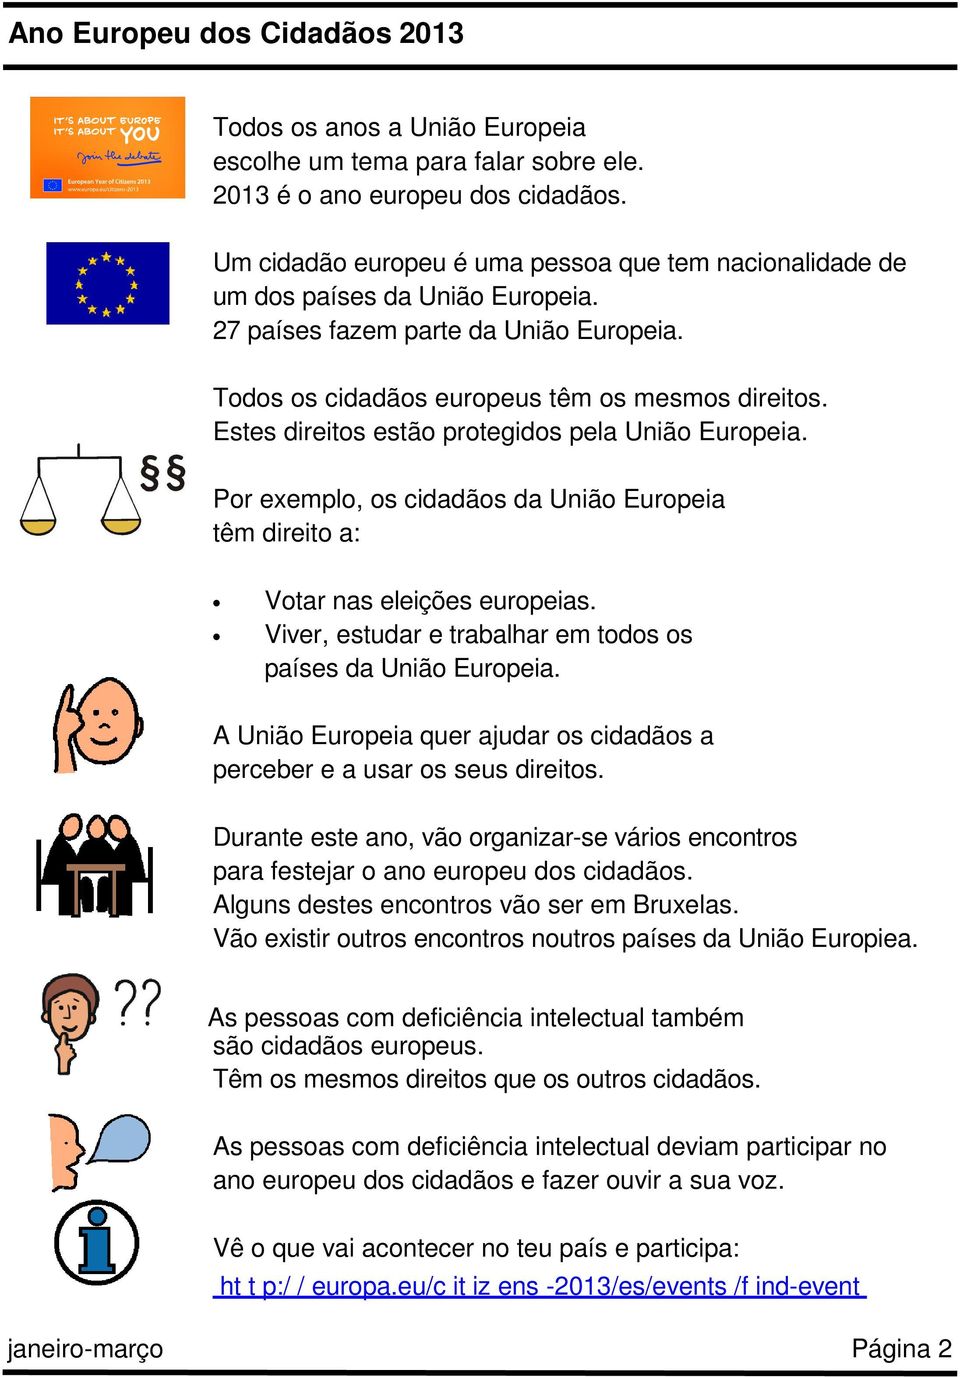 Estes direitos estão protegidos pela União Europeia. Por exemplo, os cidadãos da União Europeia têm direito a: Votar nas eleições europeias.